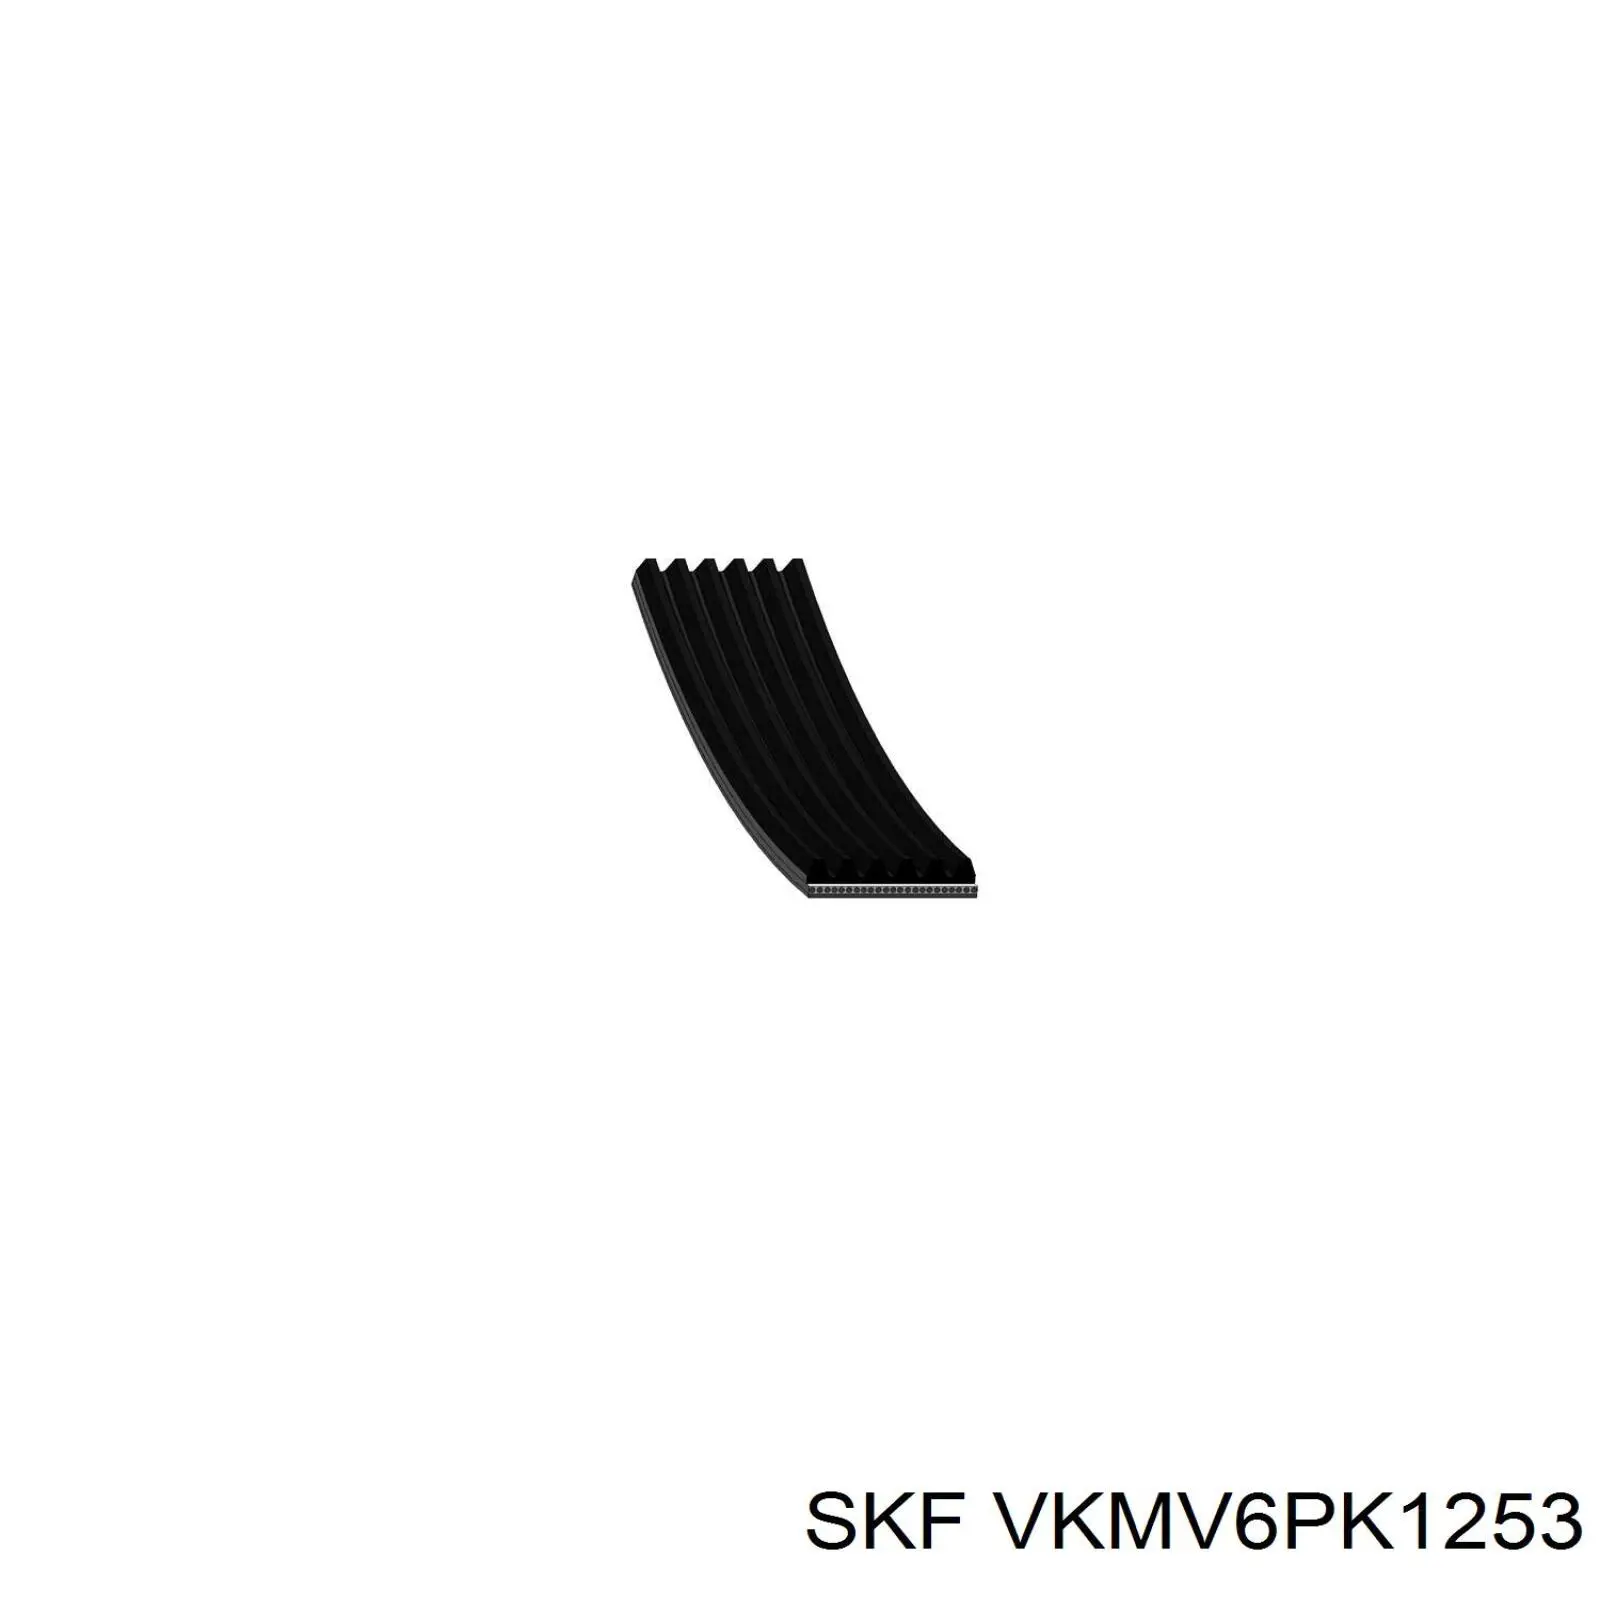 VKMV6PK1253 SKF correa trapezoidal